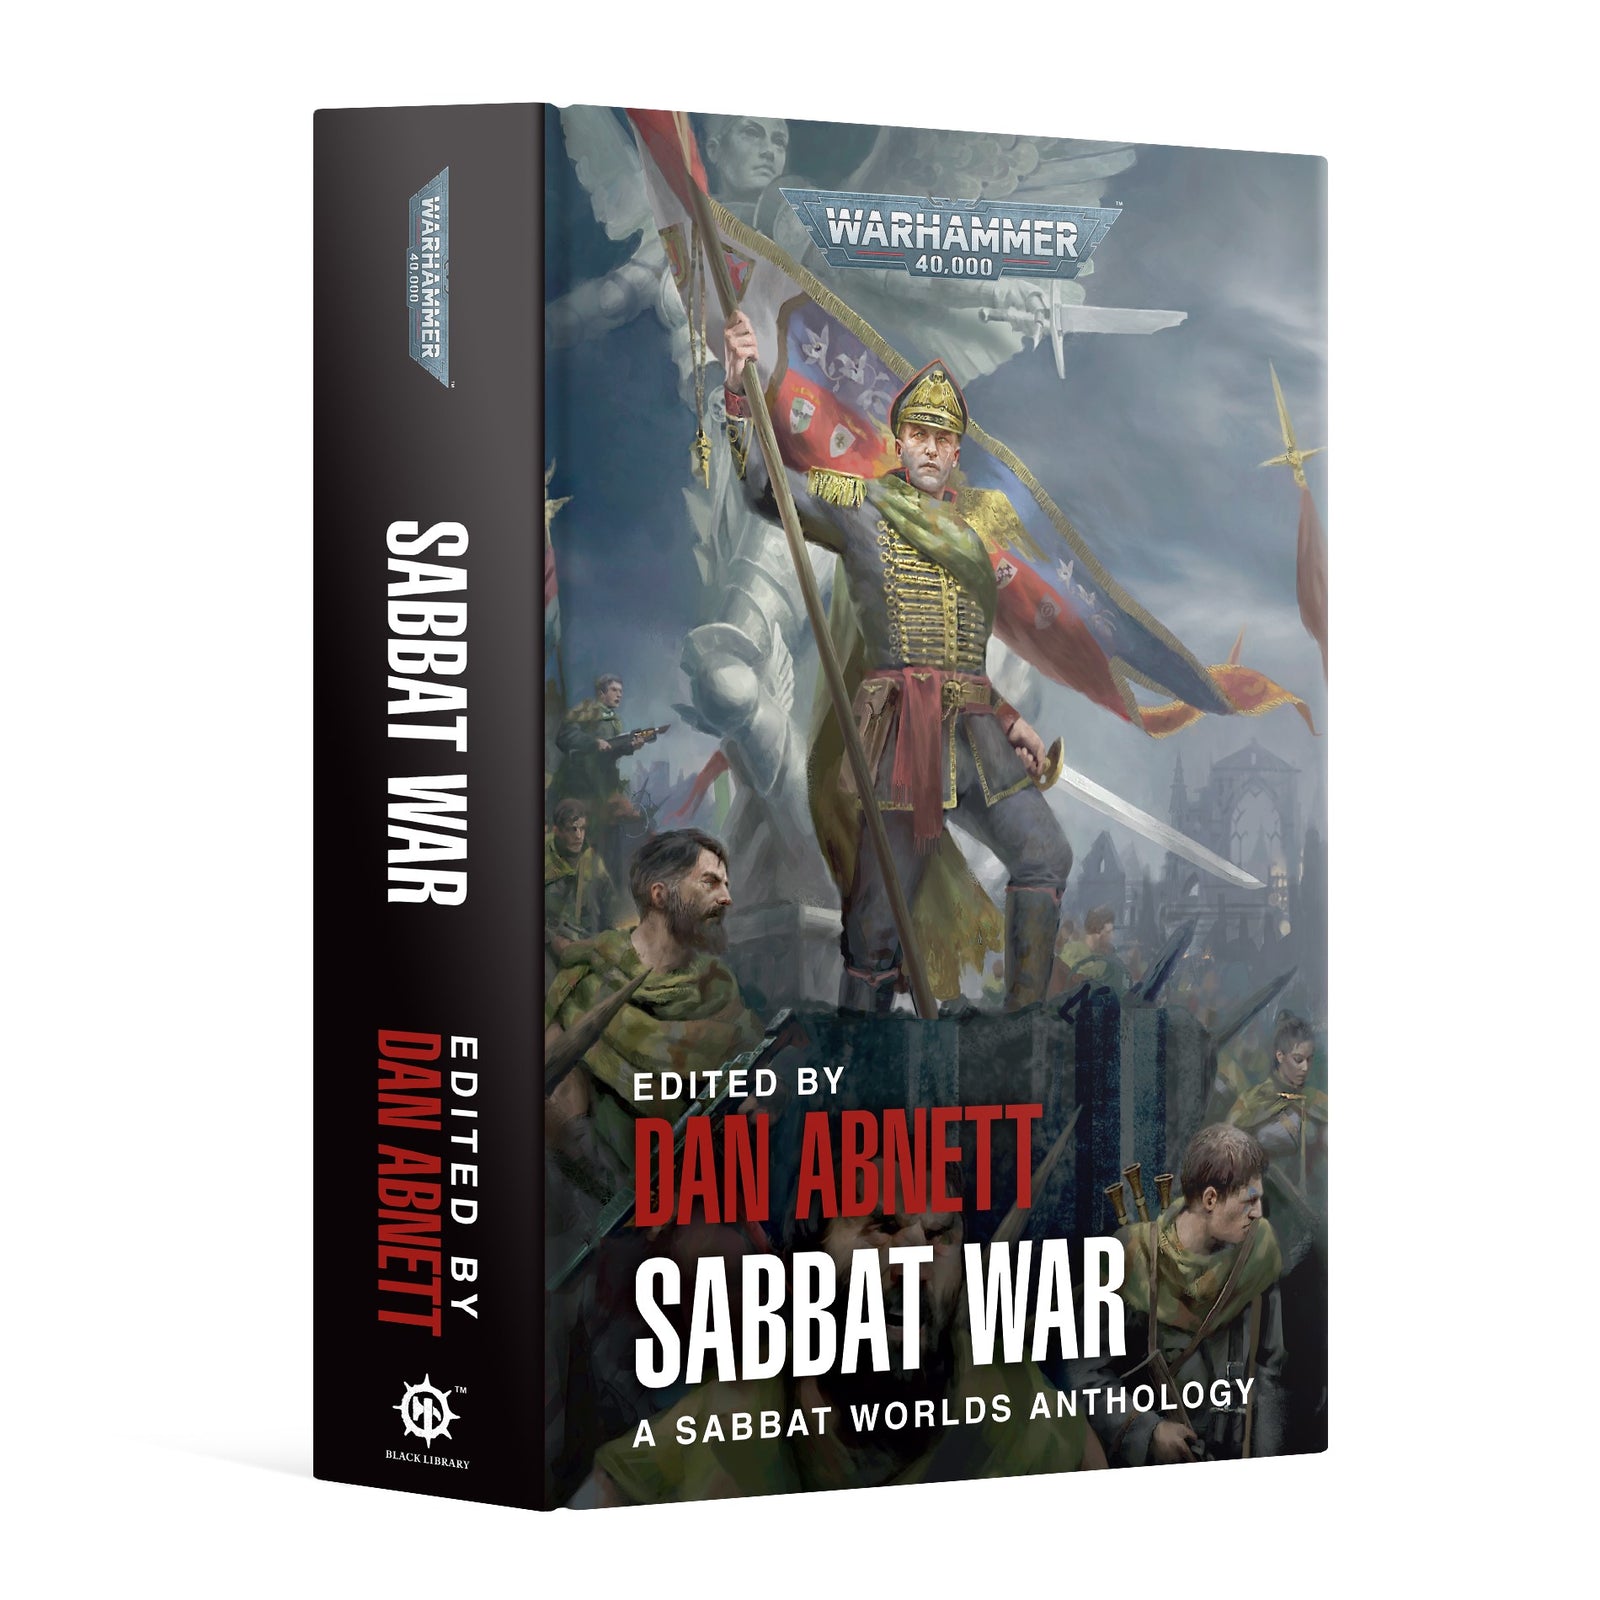 Sabbat War a Sabbat Worlds Anthology